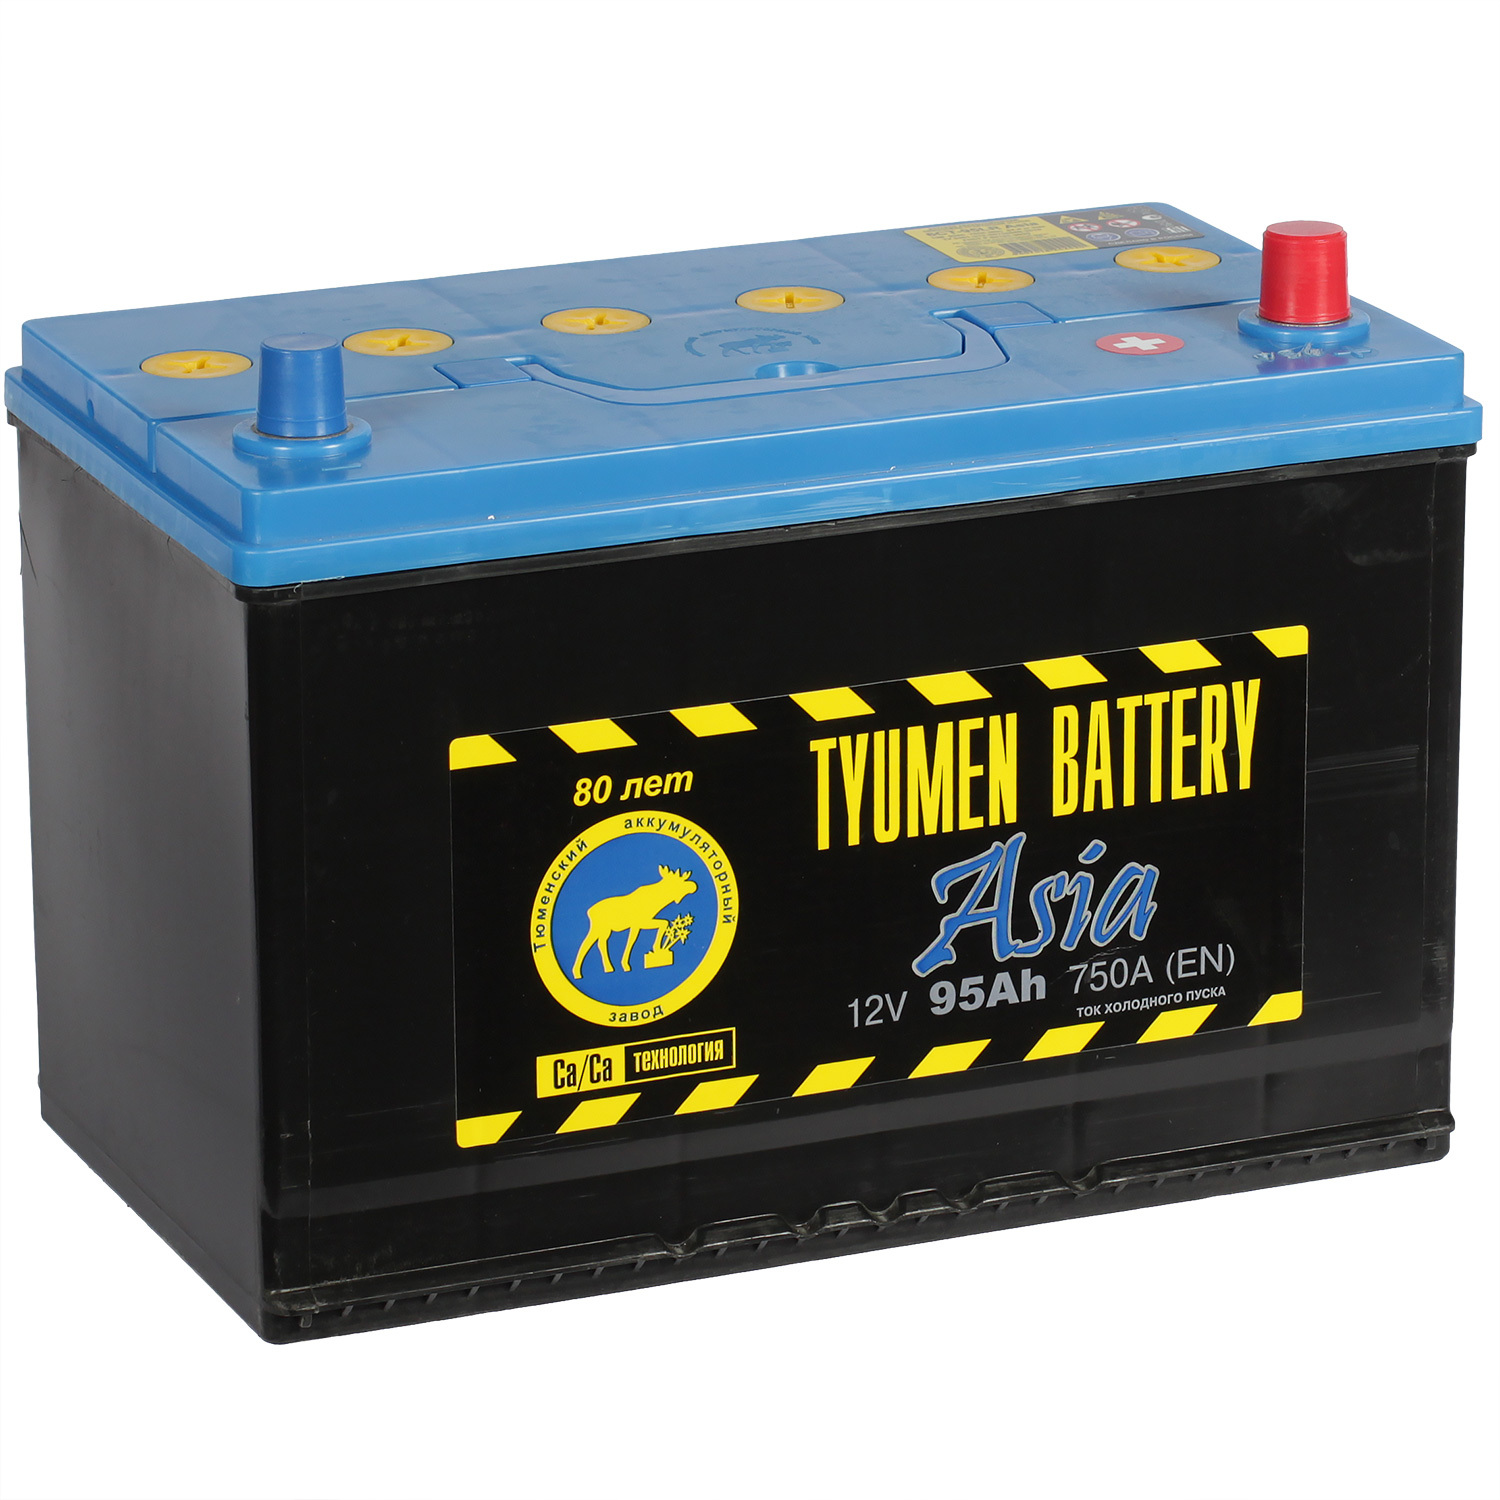 Tyumen Battery Автомобильный аккумулятор Tyumen Battery 95 Ач обратная полярность D31L tyumen battery автомобильный аккумулятор tyumen battery 61 ач прямая полярность lb2